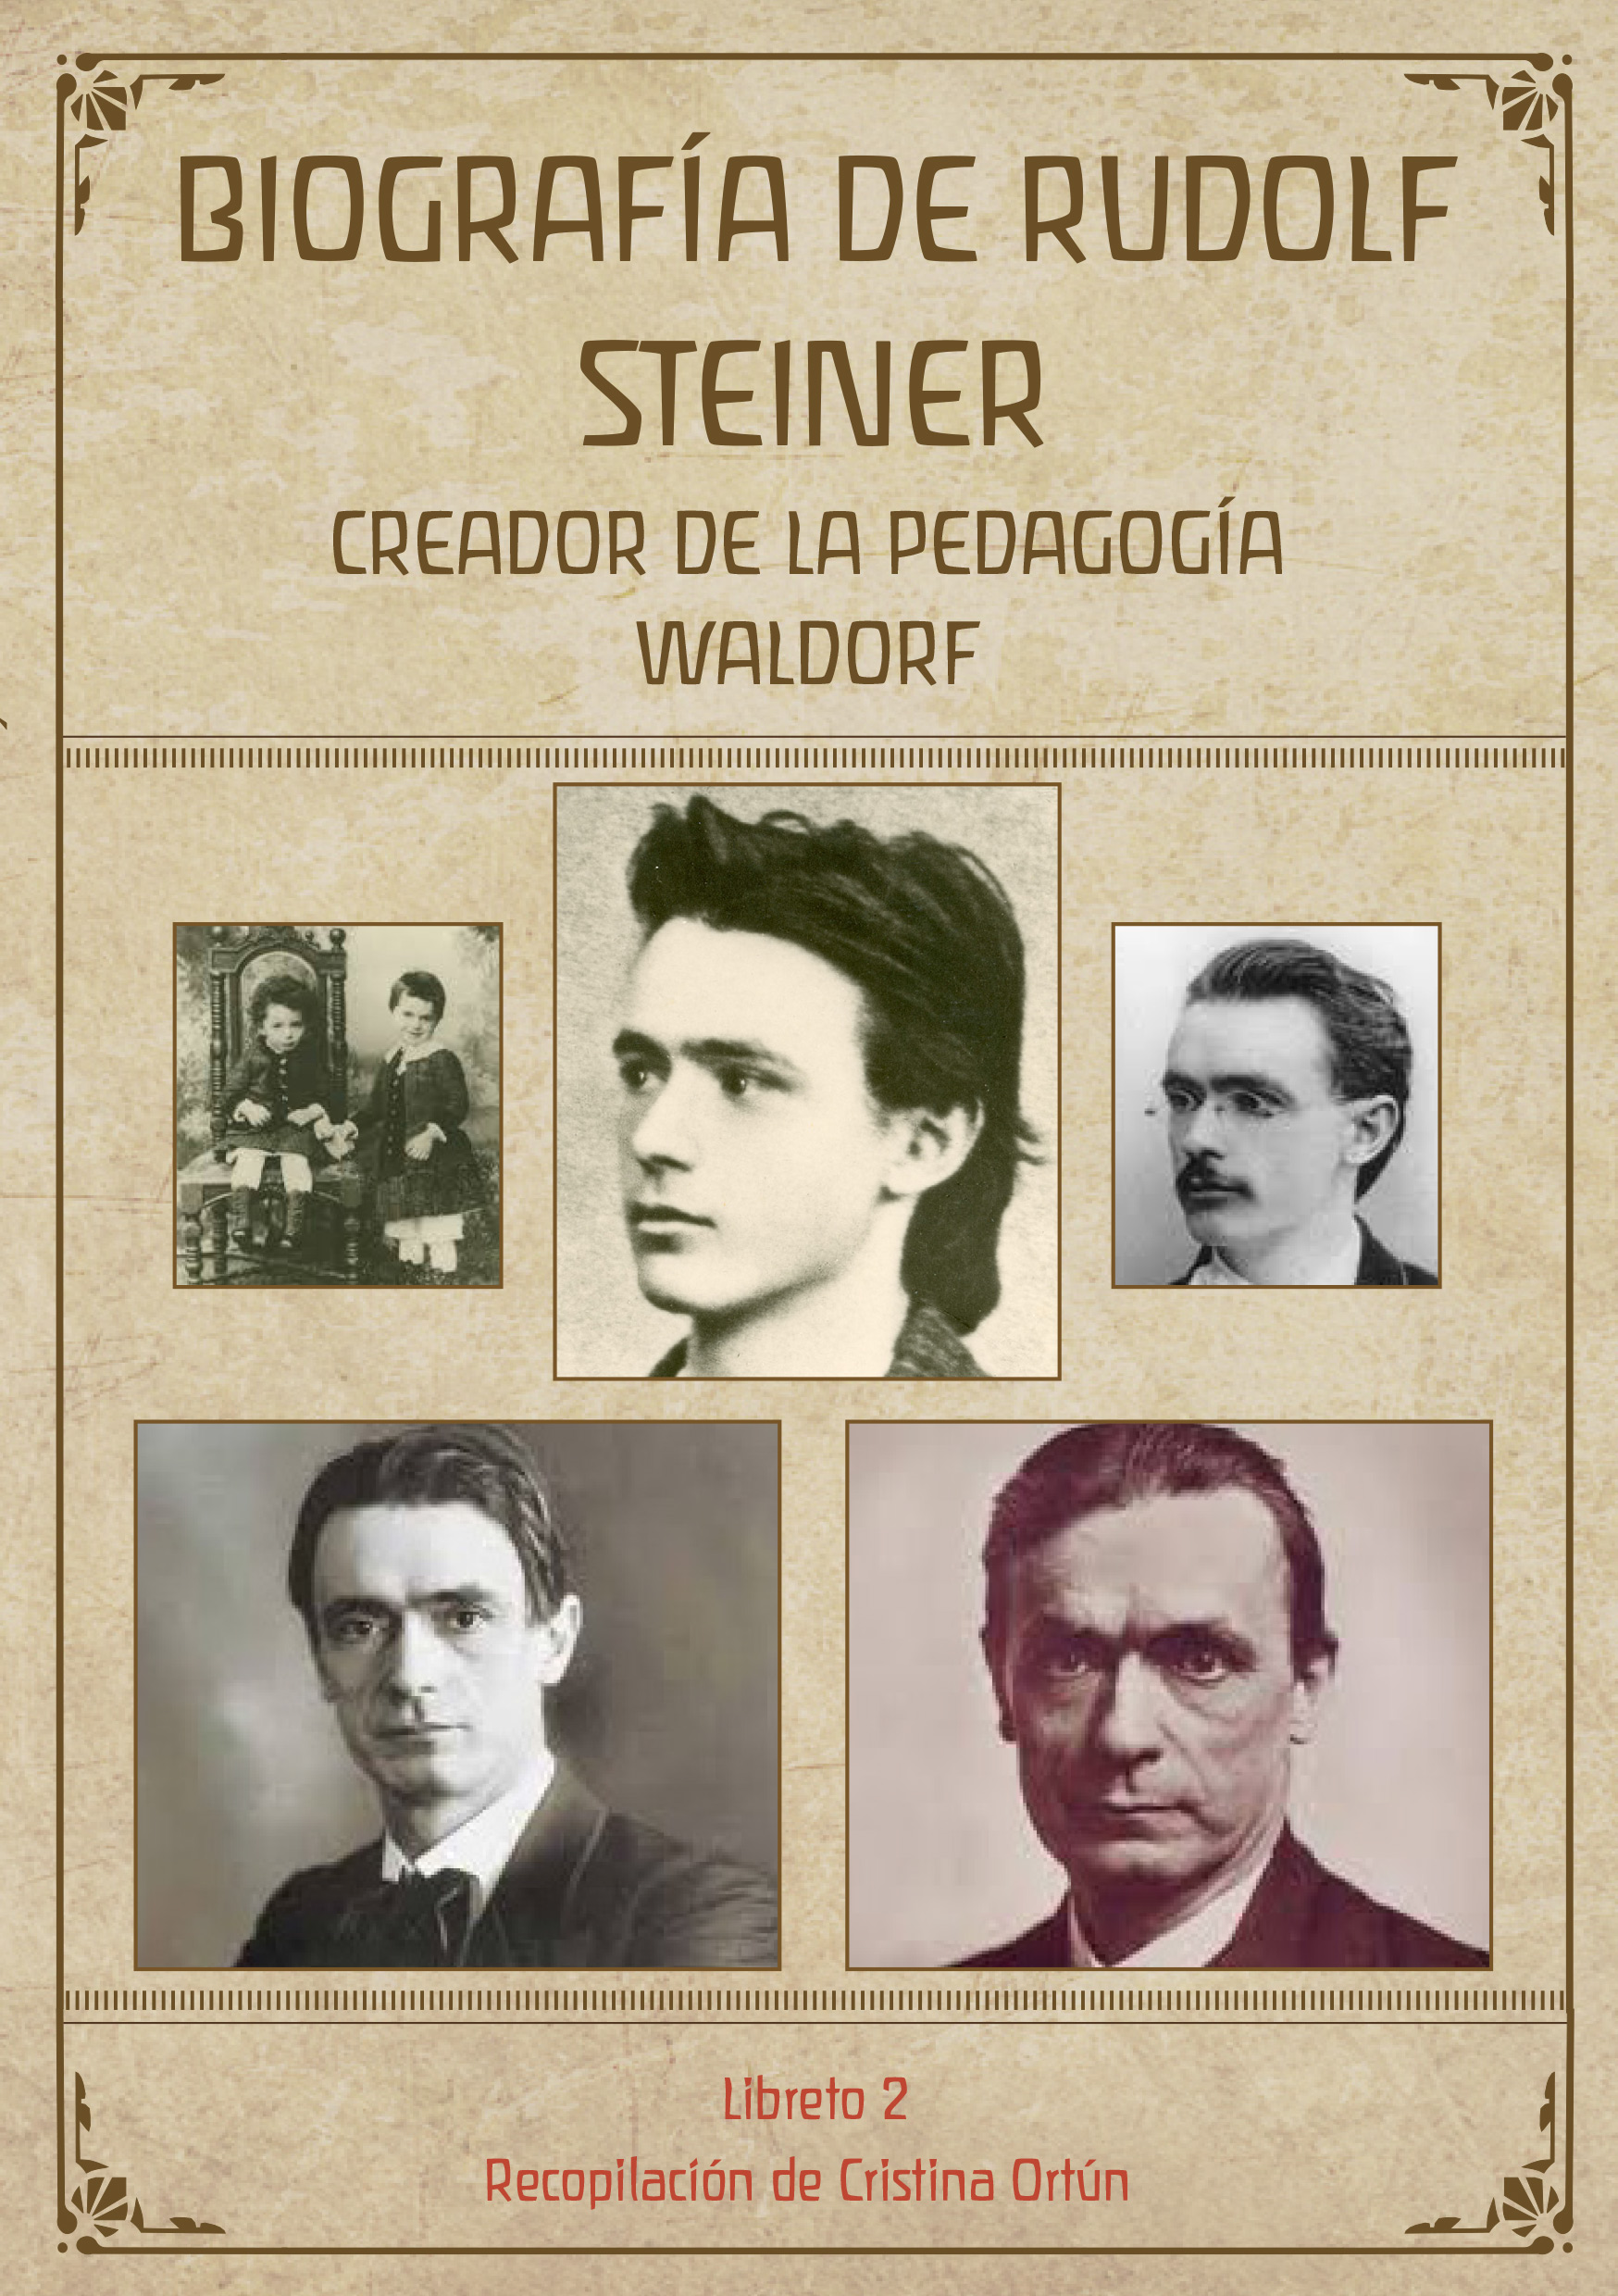 Biografía Rudolf Steiner